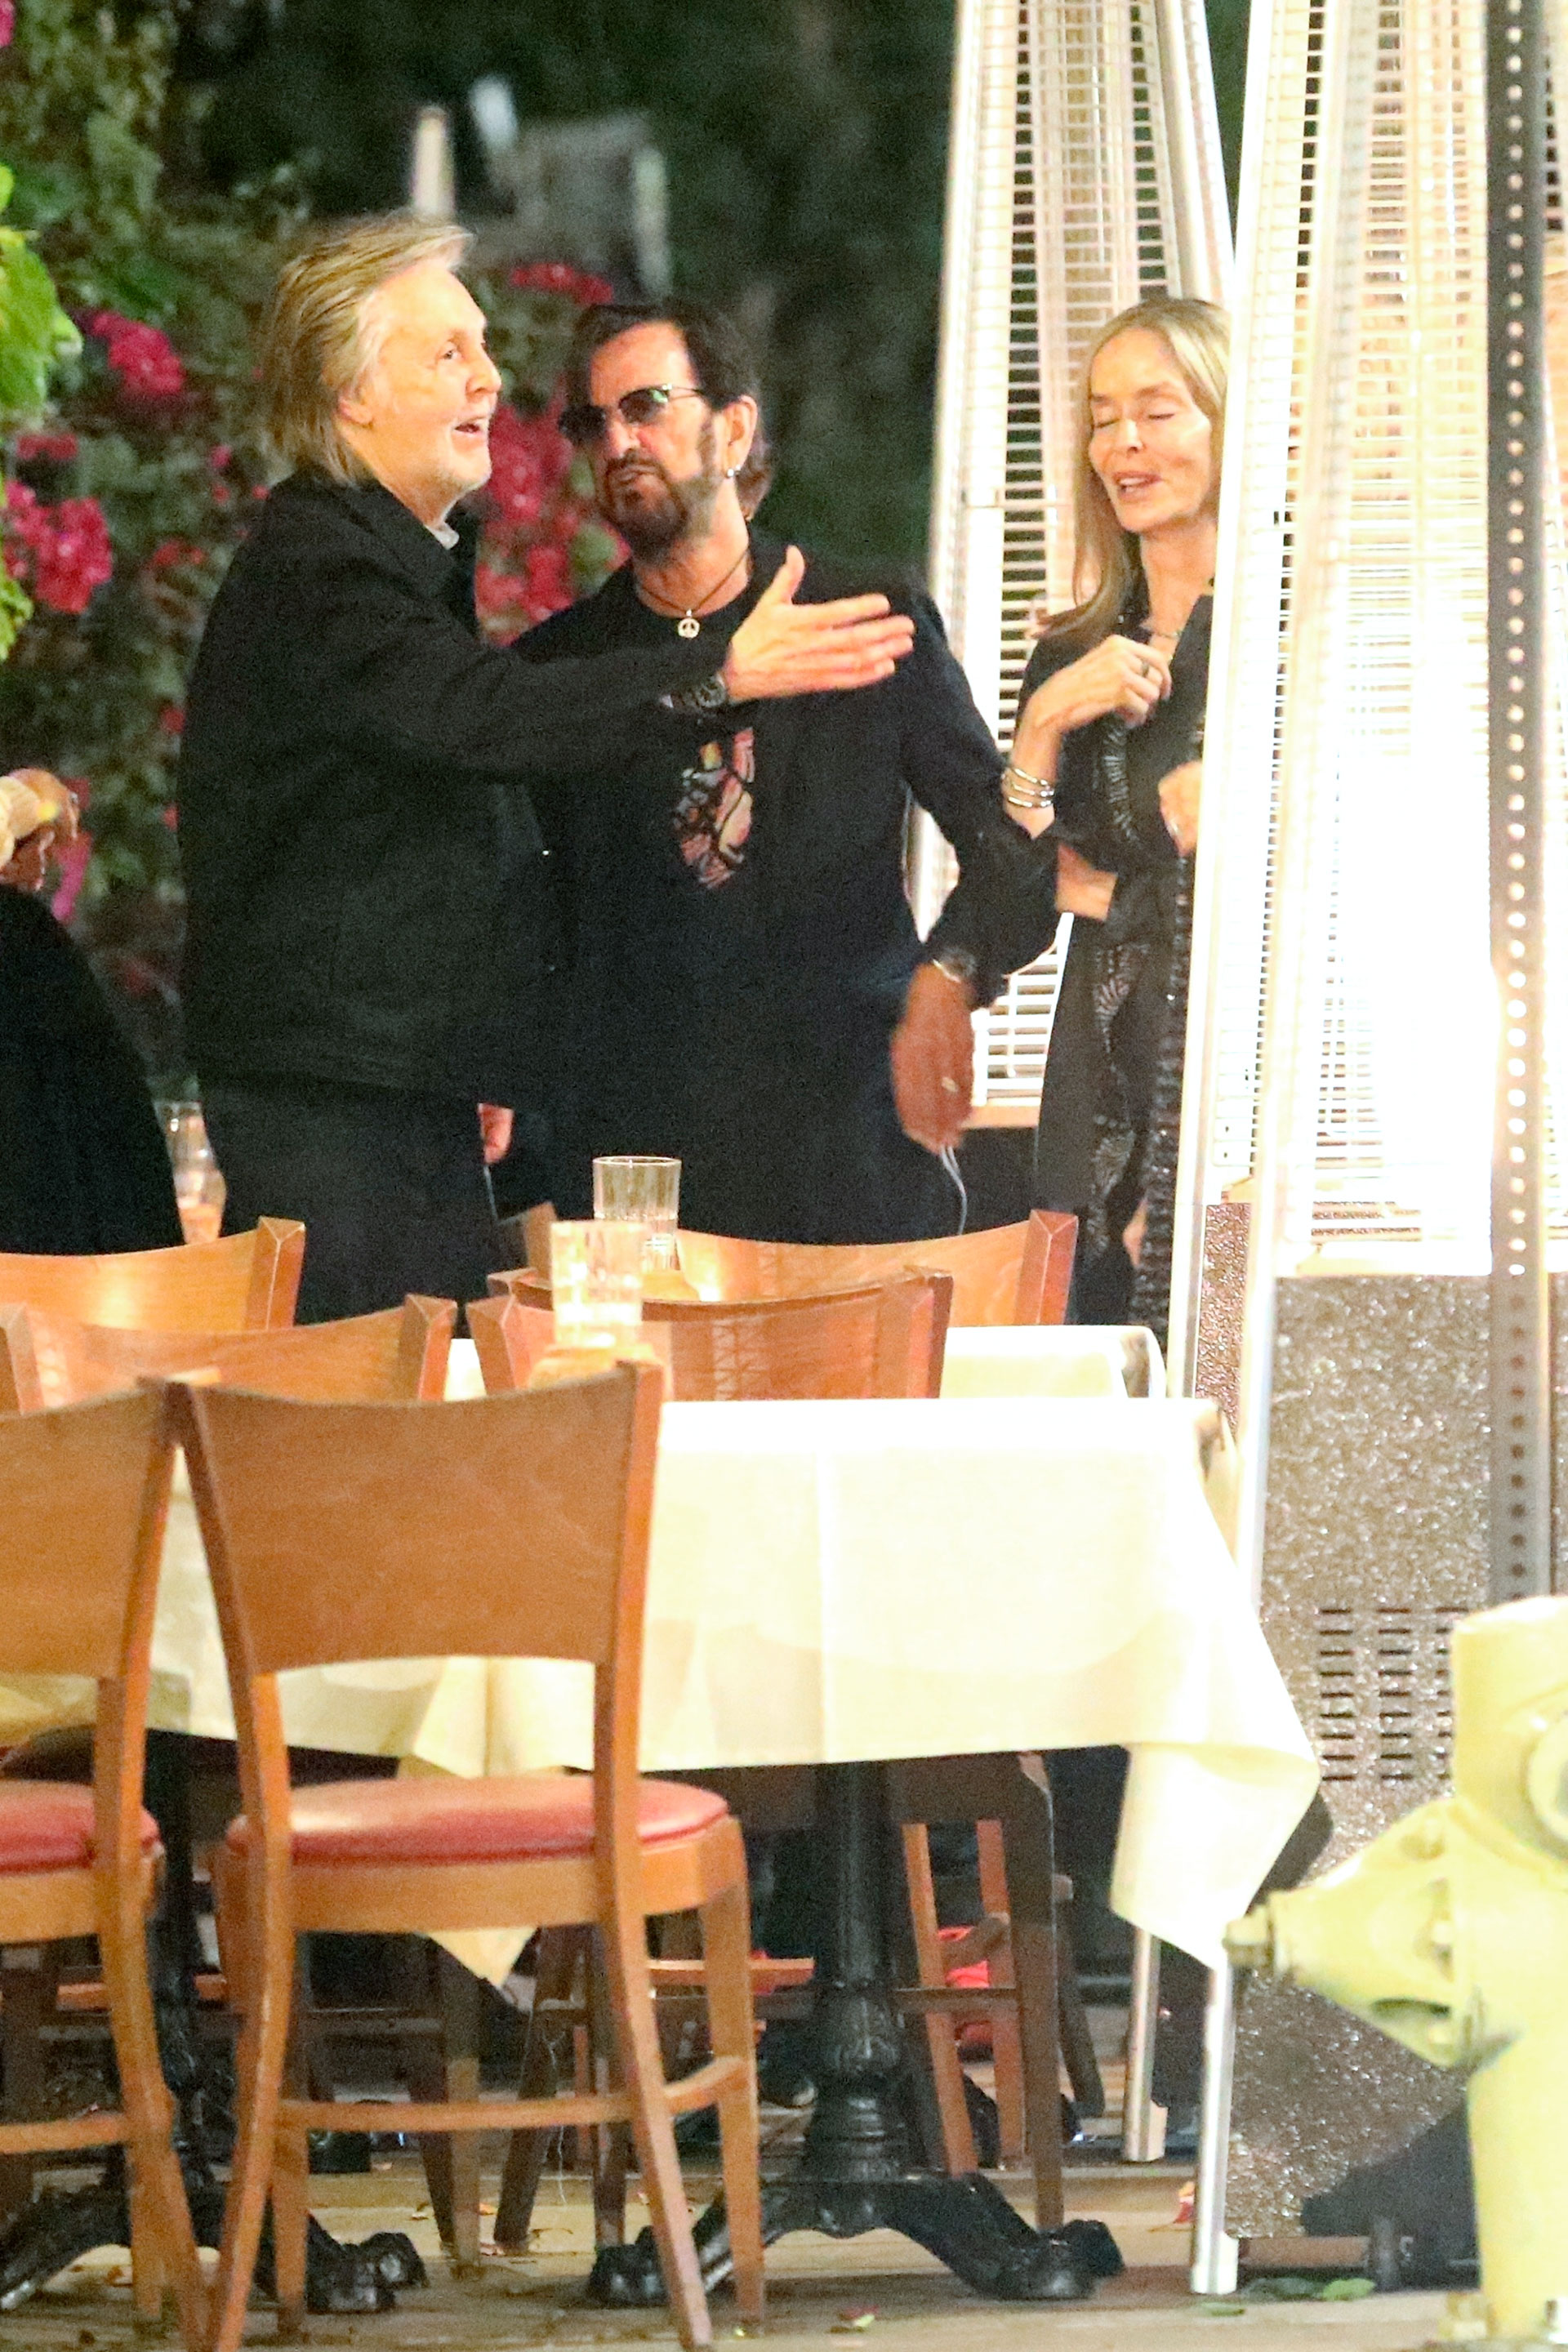 Un encuentro imperdible. Los históricos integrantes de The Beatles Paul McCartney y Ringo Starr se reunieron con el guitarrista Joe Walsh en un exclusivo restaurante de Los Ángeles al que fueron a comer con sus respectivas parejas